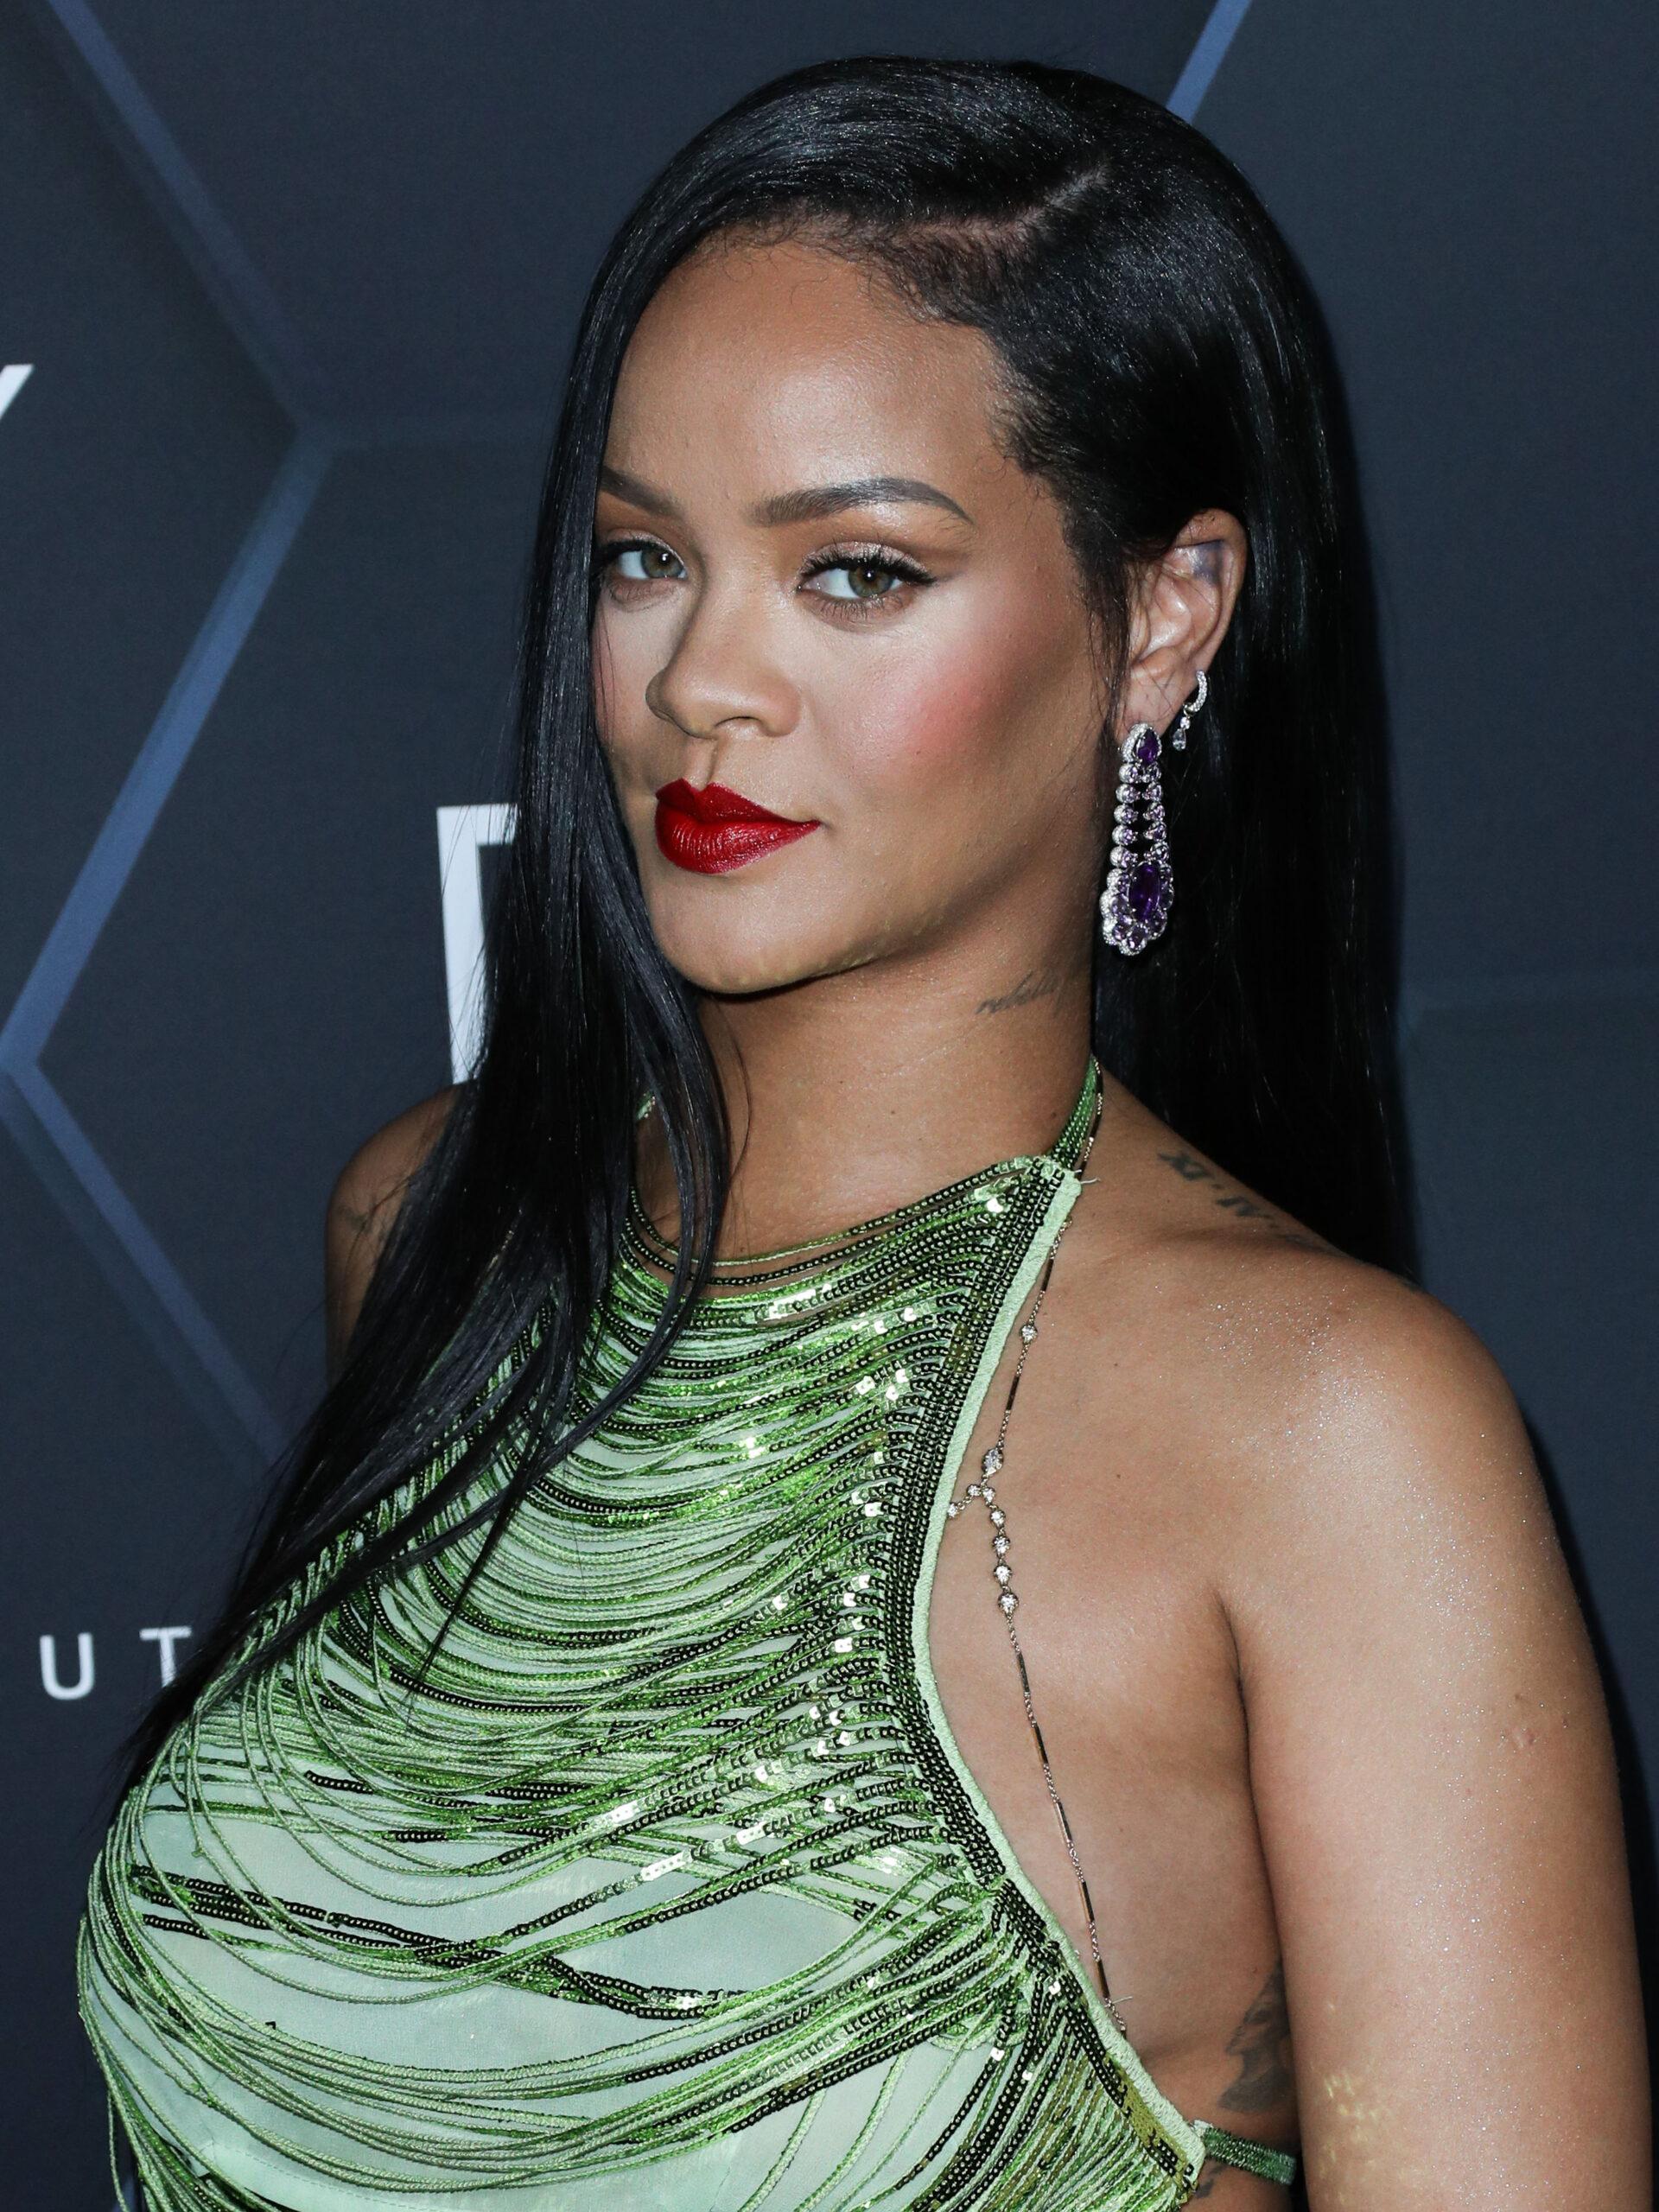 Rihanna no photocall Fenty Beauty e Fenty Skin